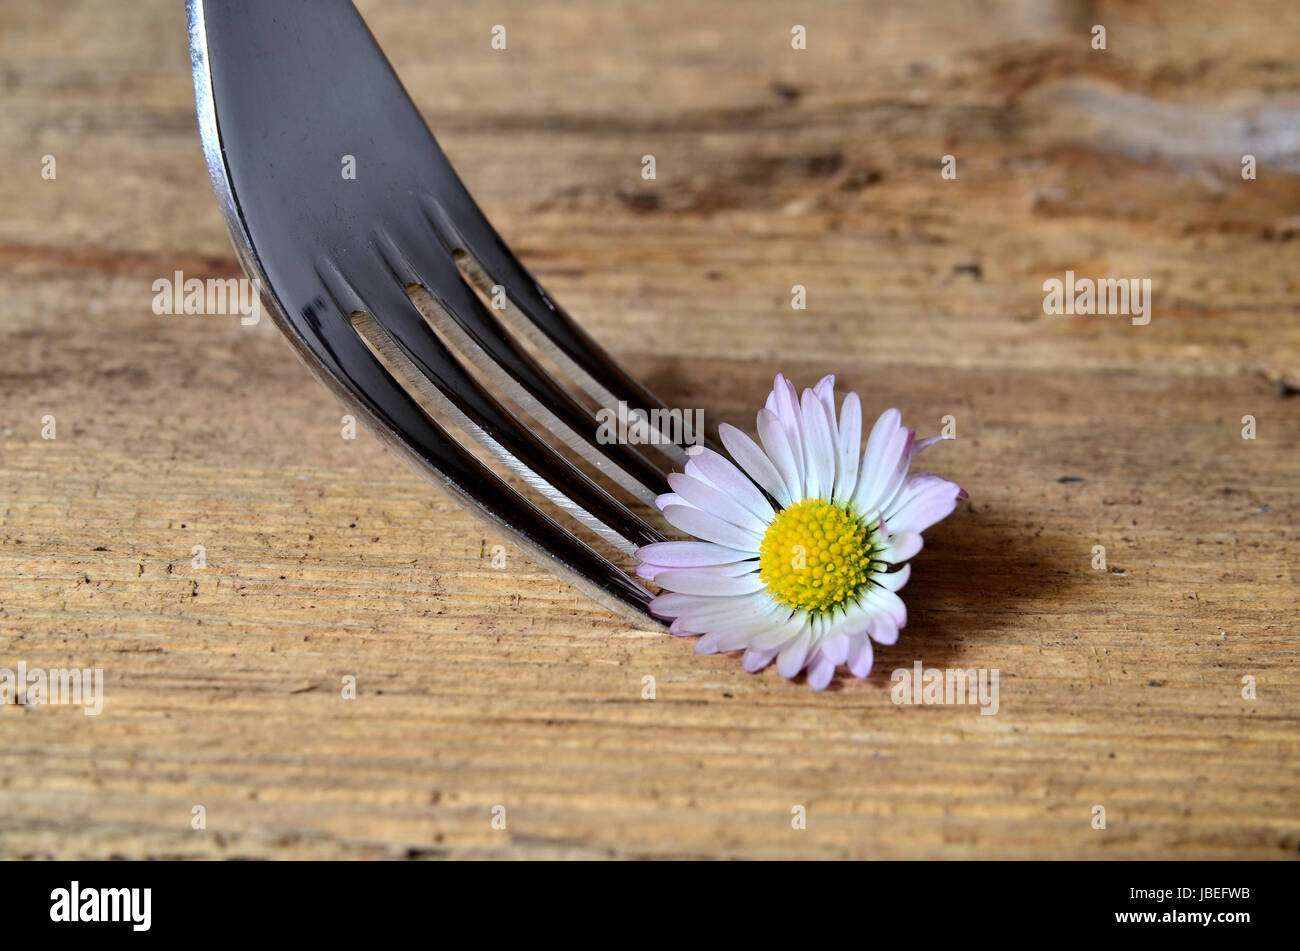 Gänseblümchen auf einer Gabel auf Holzhintergrund Foto Stock